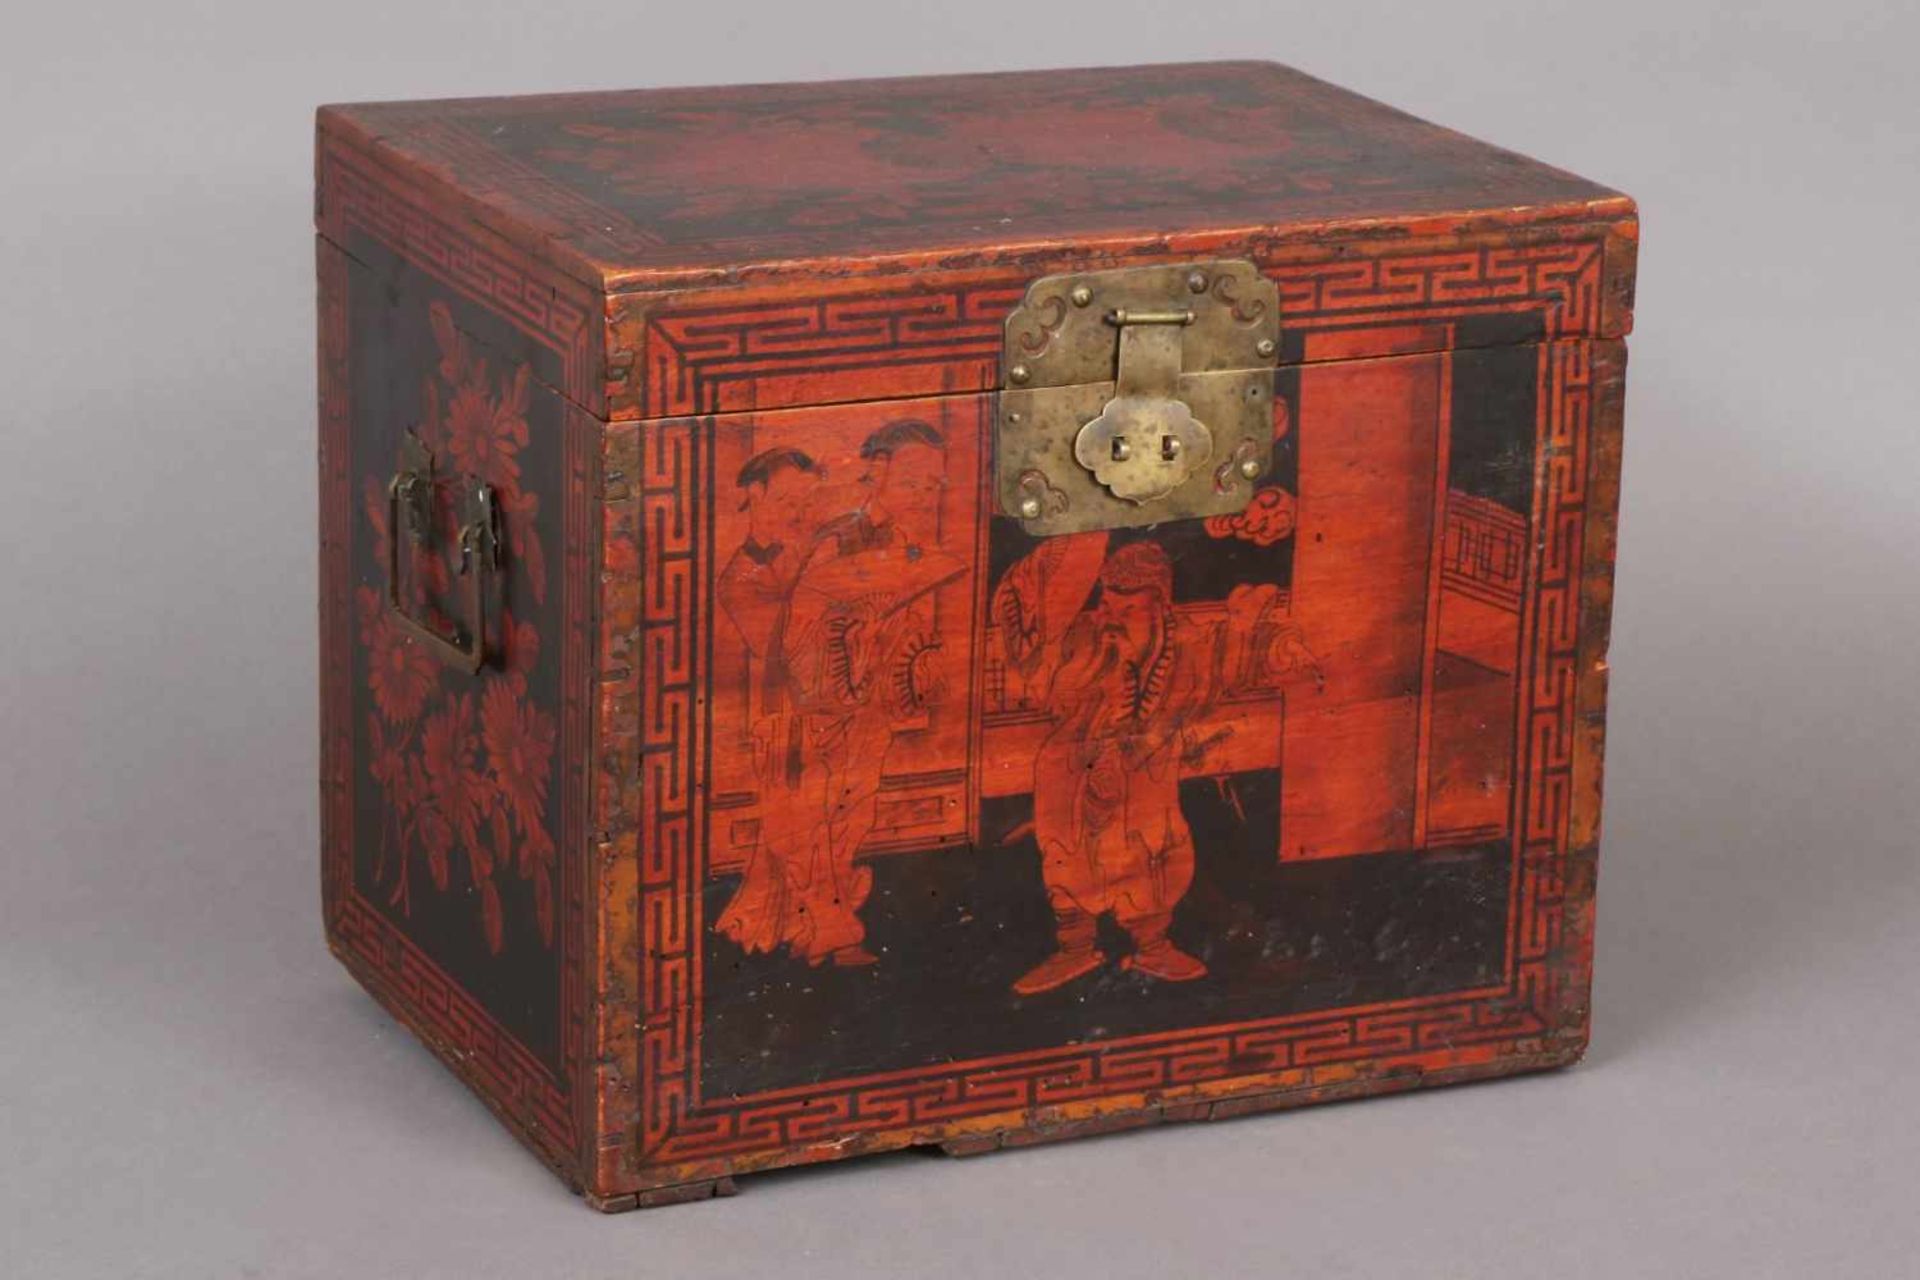 Chinesische HolzschatulleHartholz, rot-braun gebeizt, Qing-Dynastie (1644-1912), allseitig mit